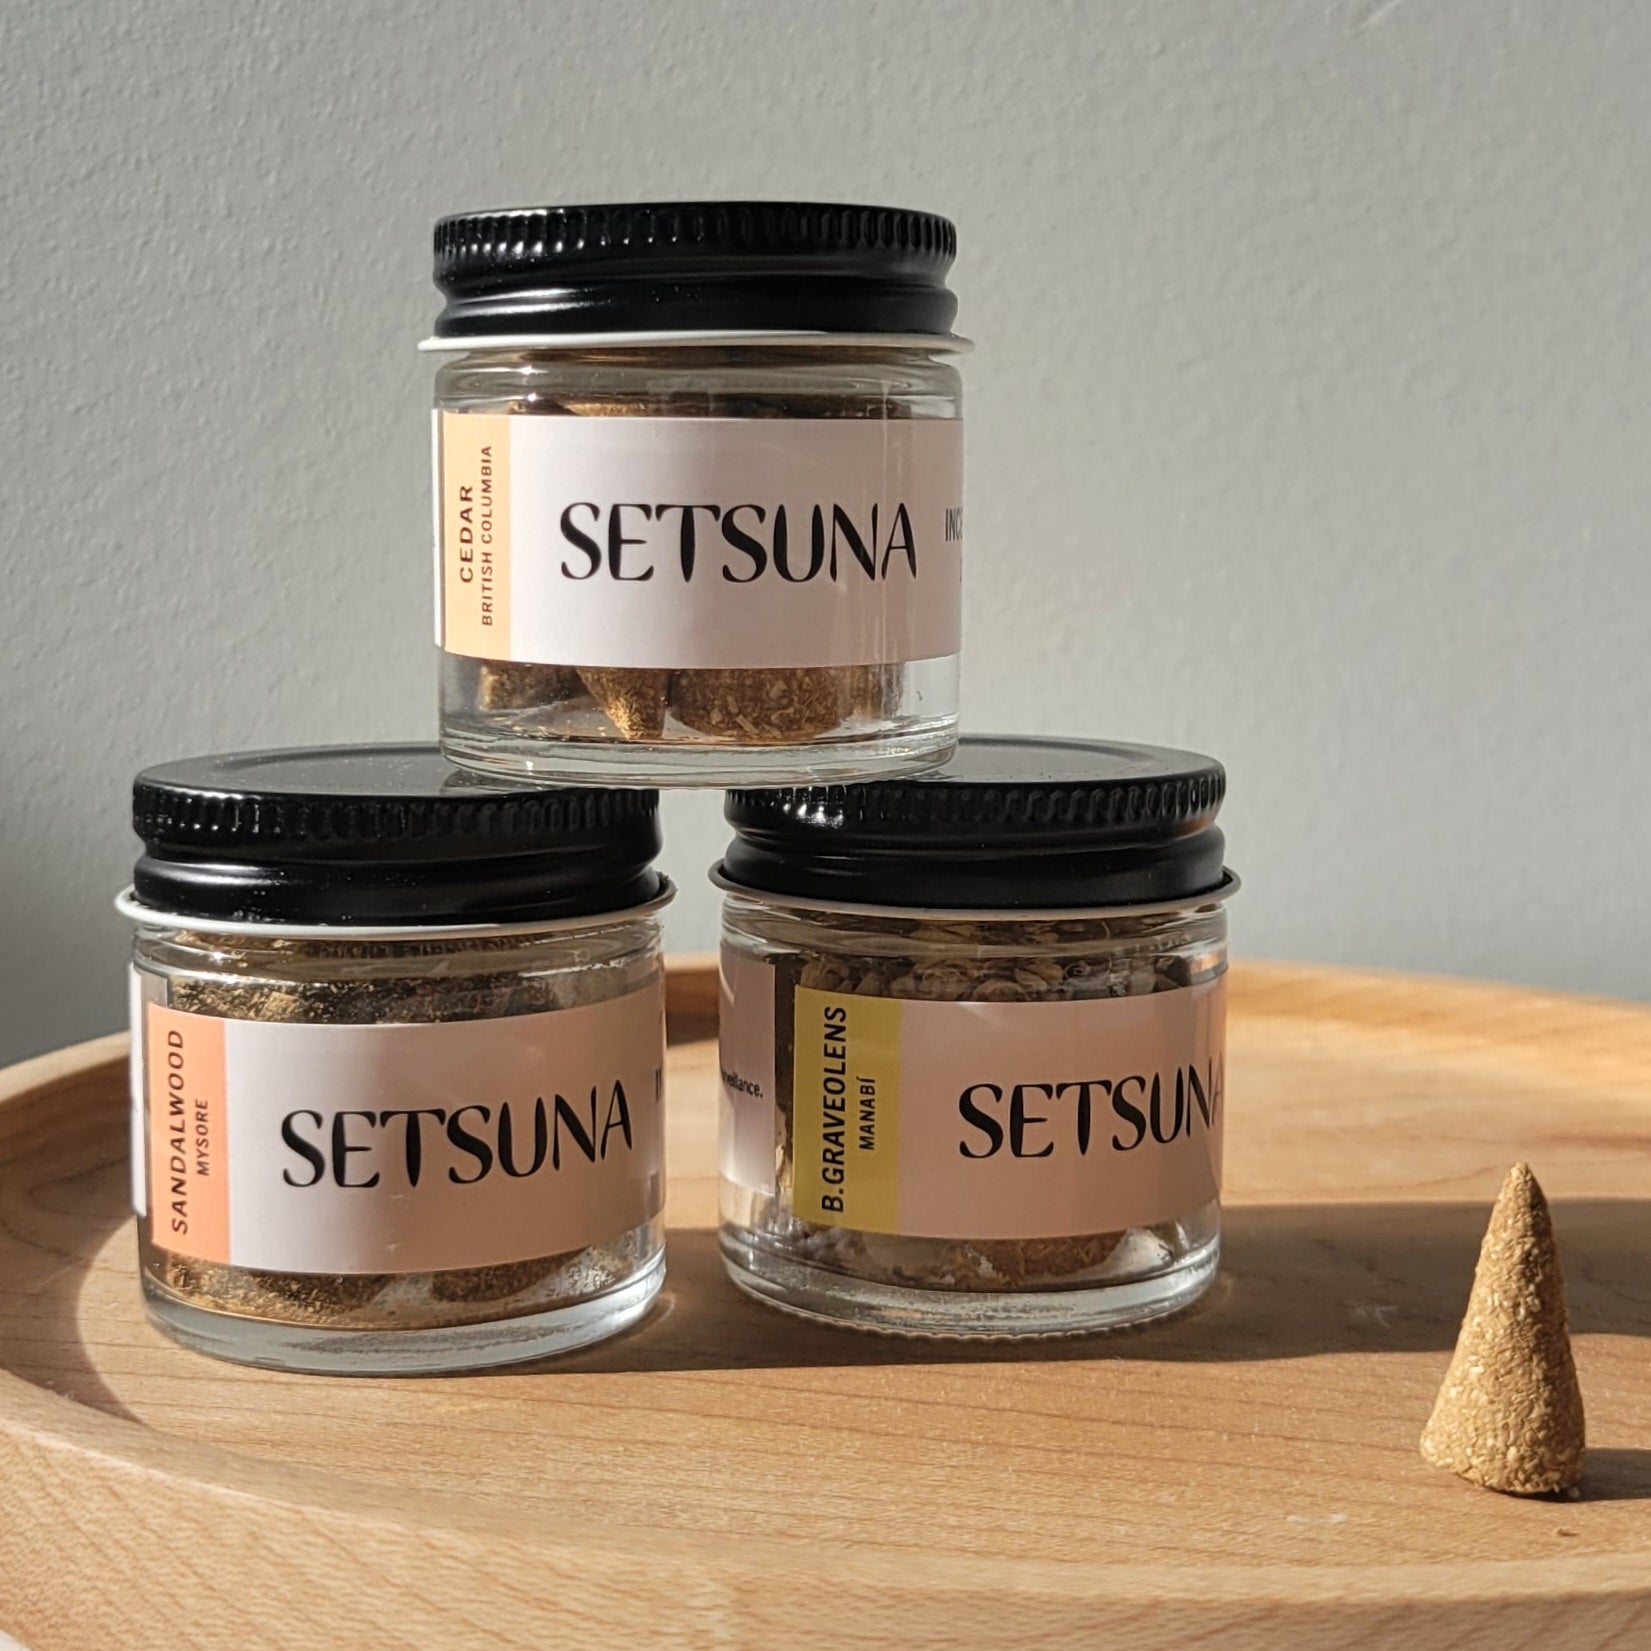 Setsuna - Palo Santo Wood Incense Cones